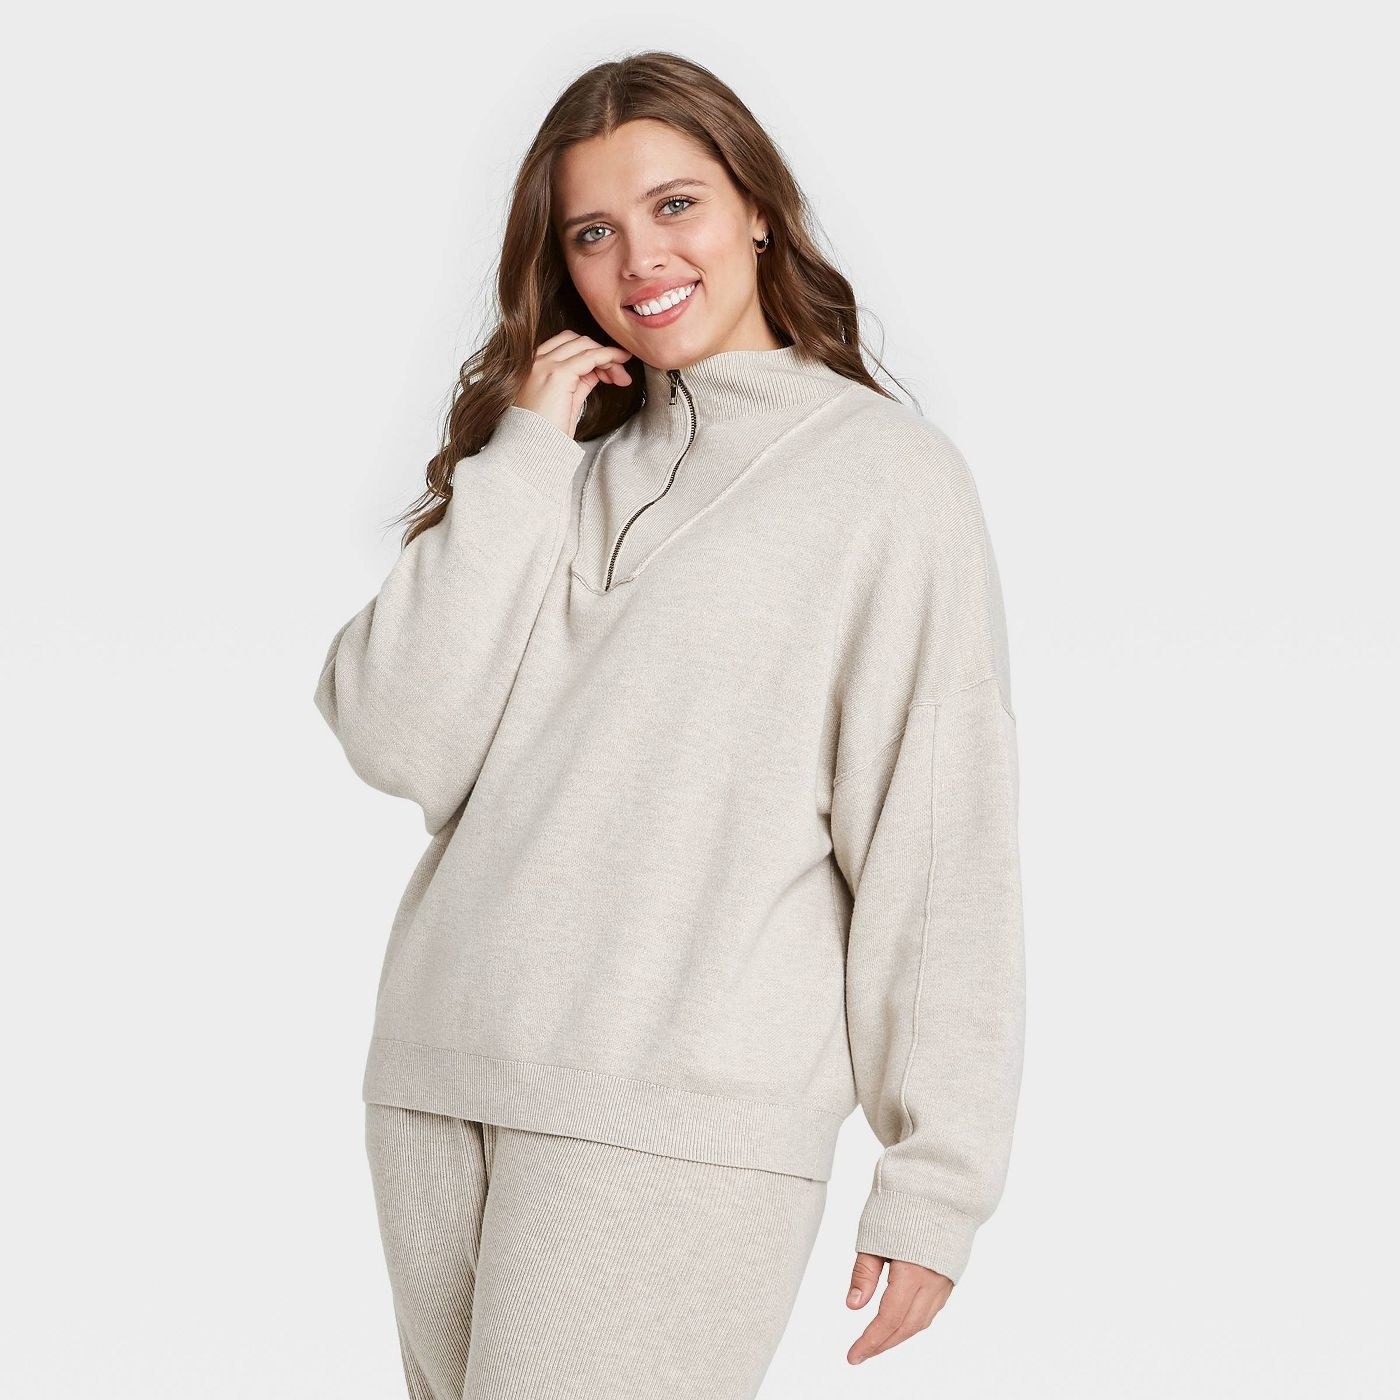 Model in Mock Turtleneck Cozy Quarter Zip Pullover Sweater